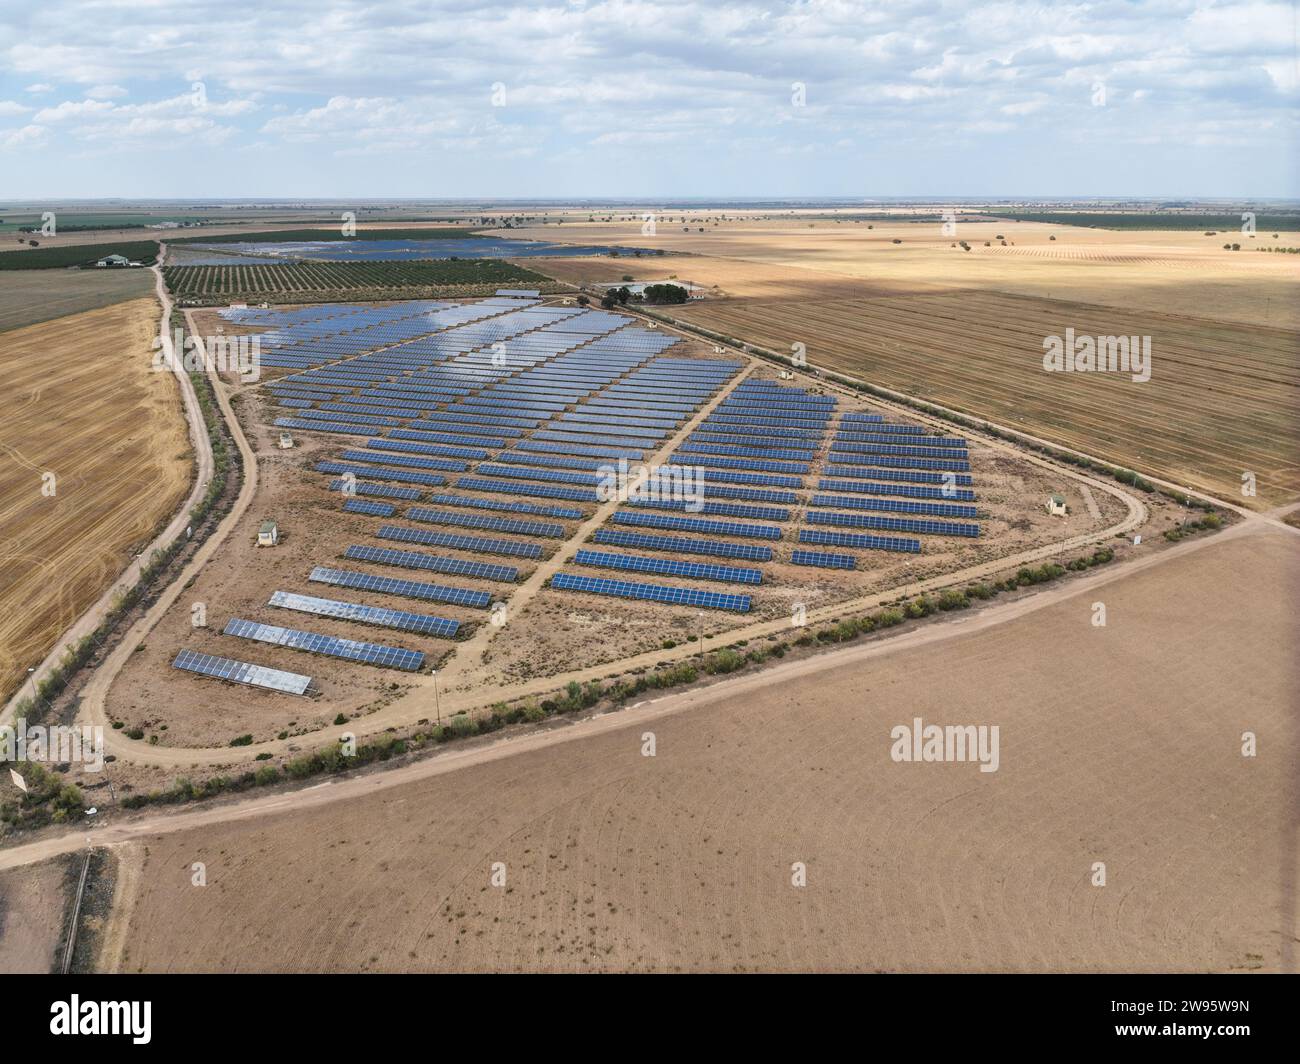 Vue drone d'une grande centrale de panneaux solaires pour créer de l'énergie électrique propre au milieu de grandes zones agricoles en Espagne. Champ de centrales photovoltaïques Banque D'Images